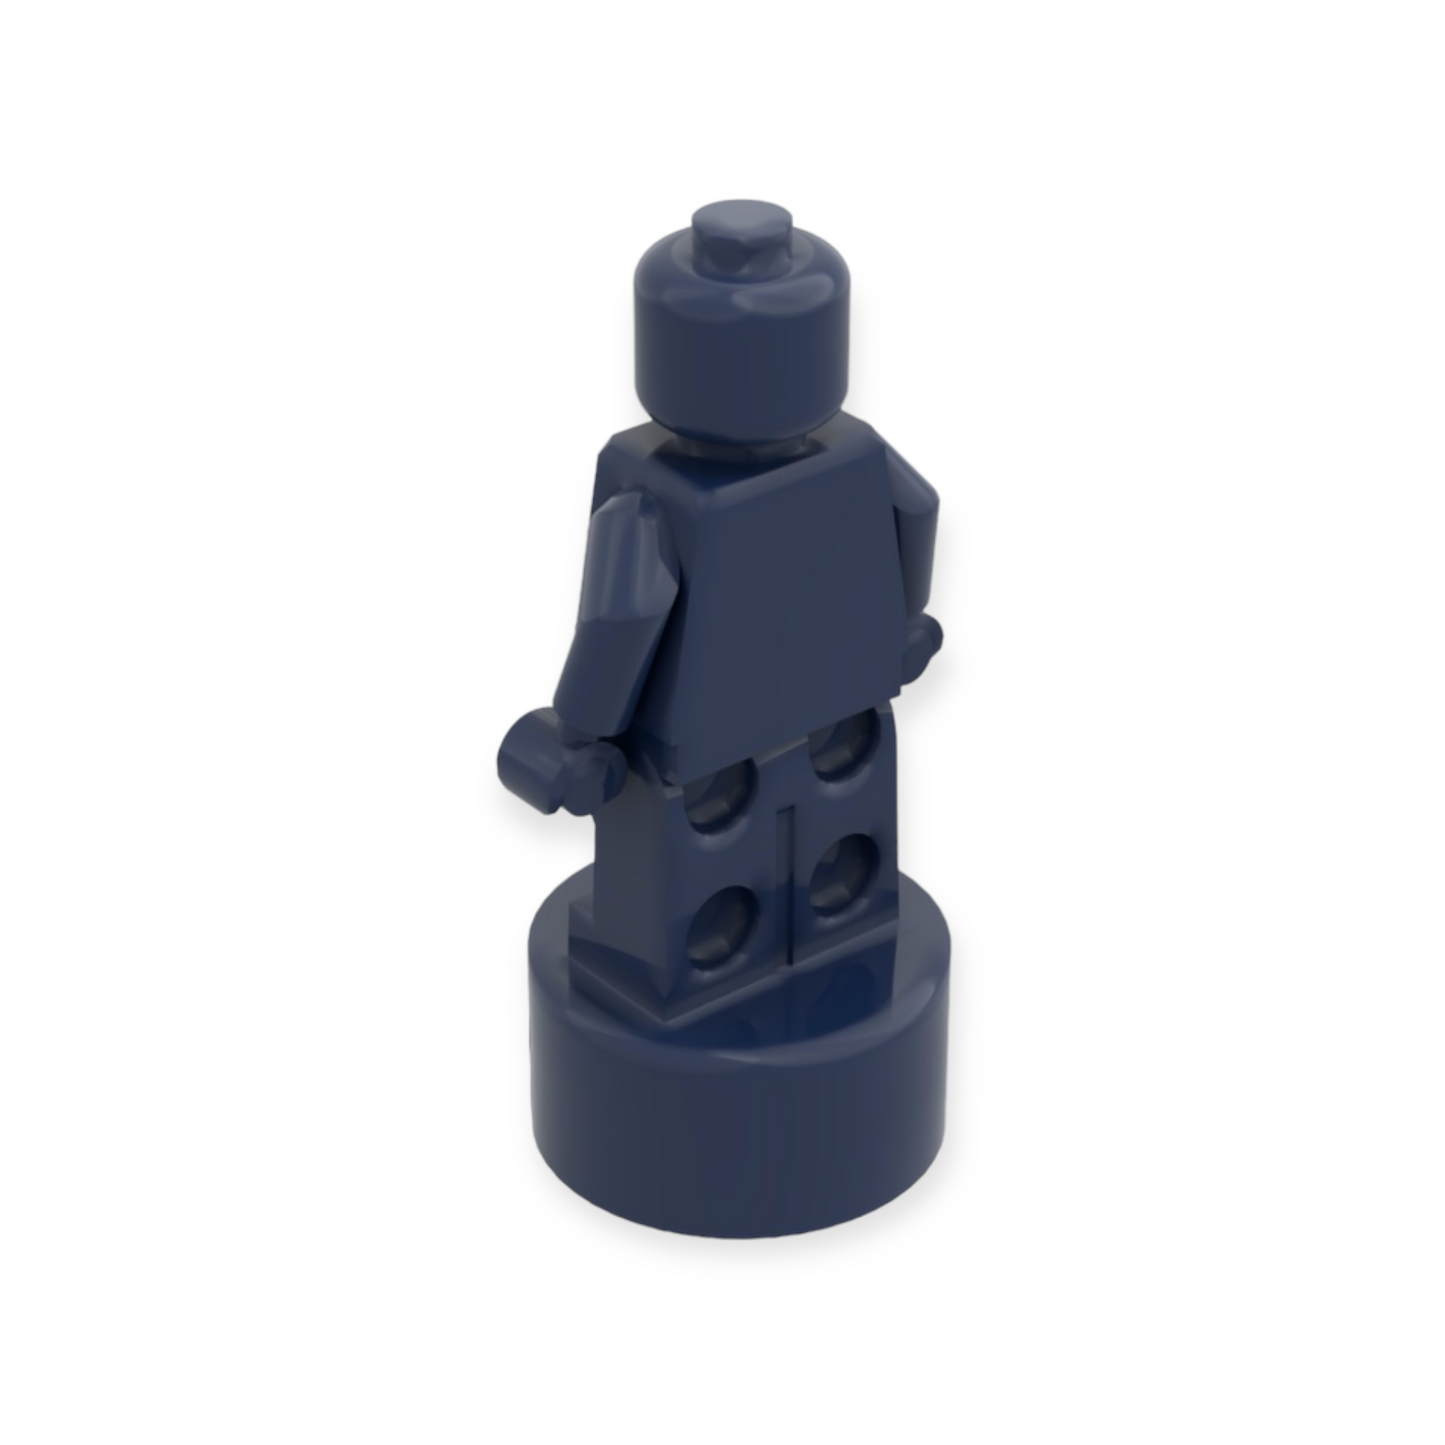 LEGO Minifigur Trophy - Dark Blue